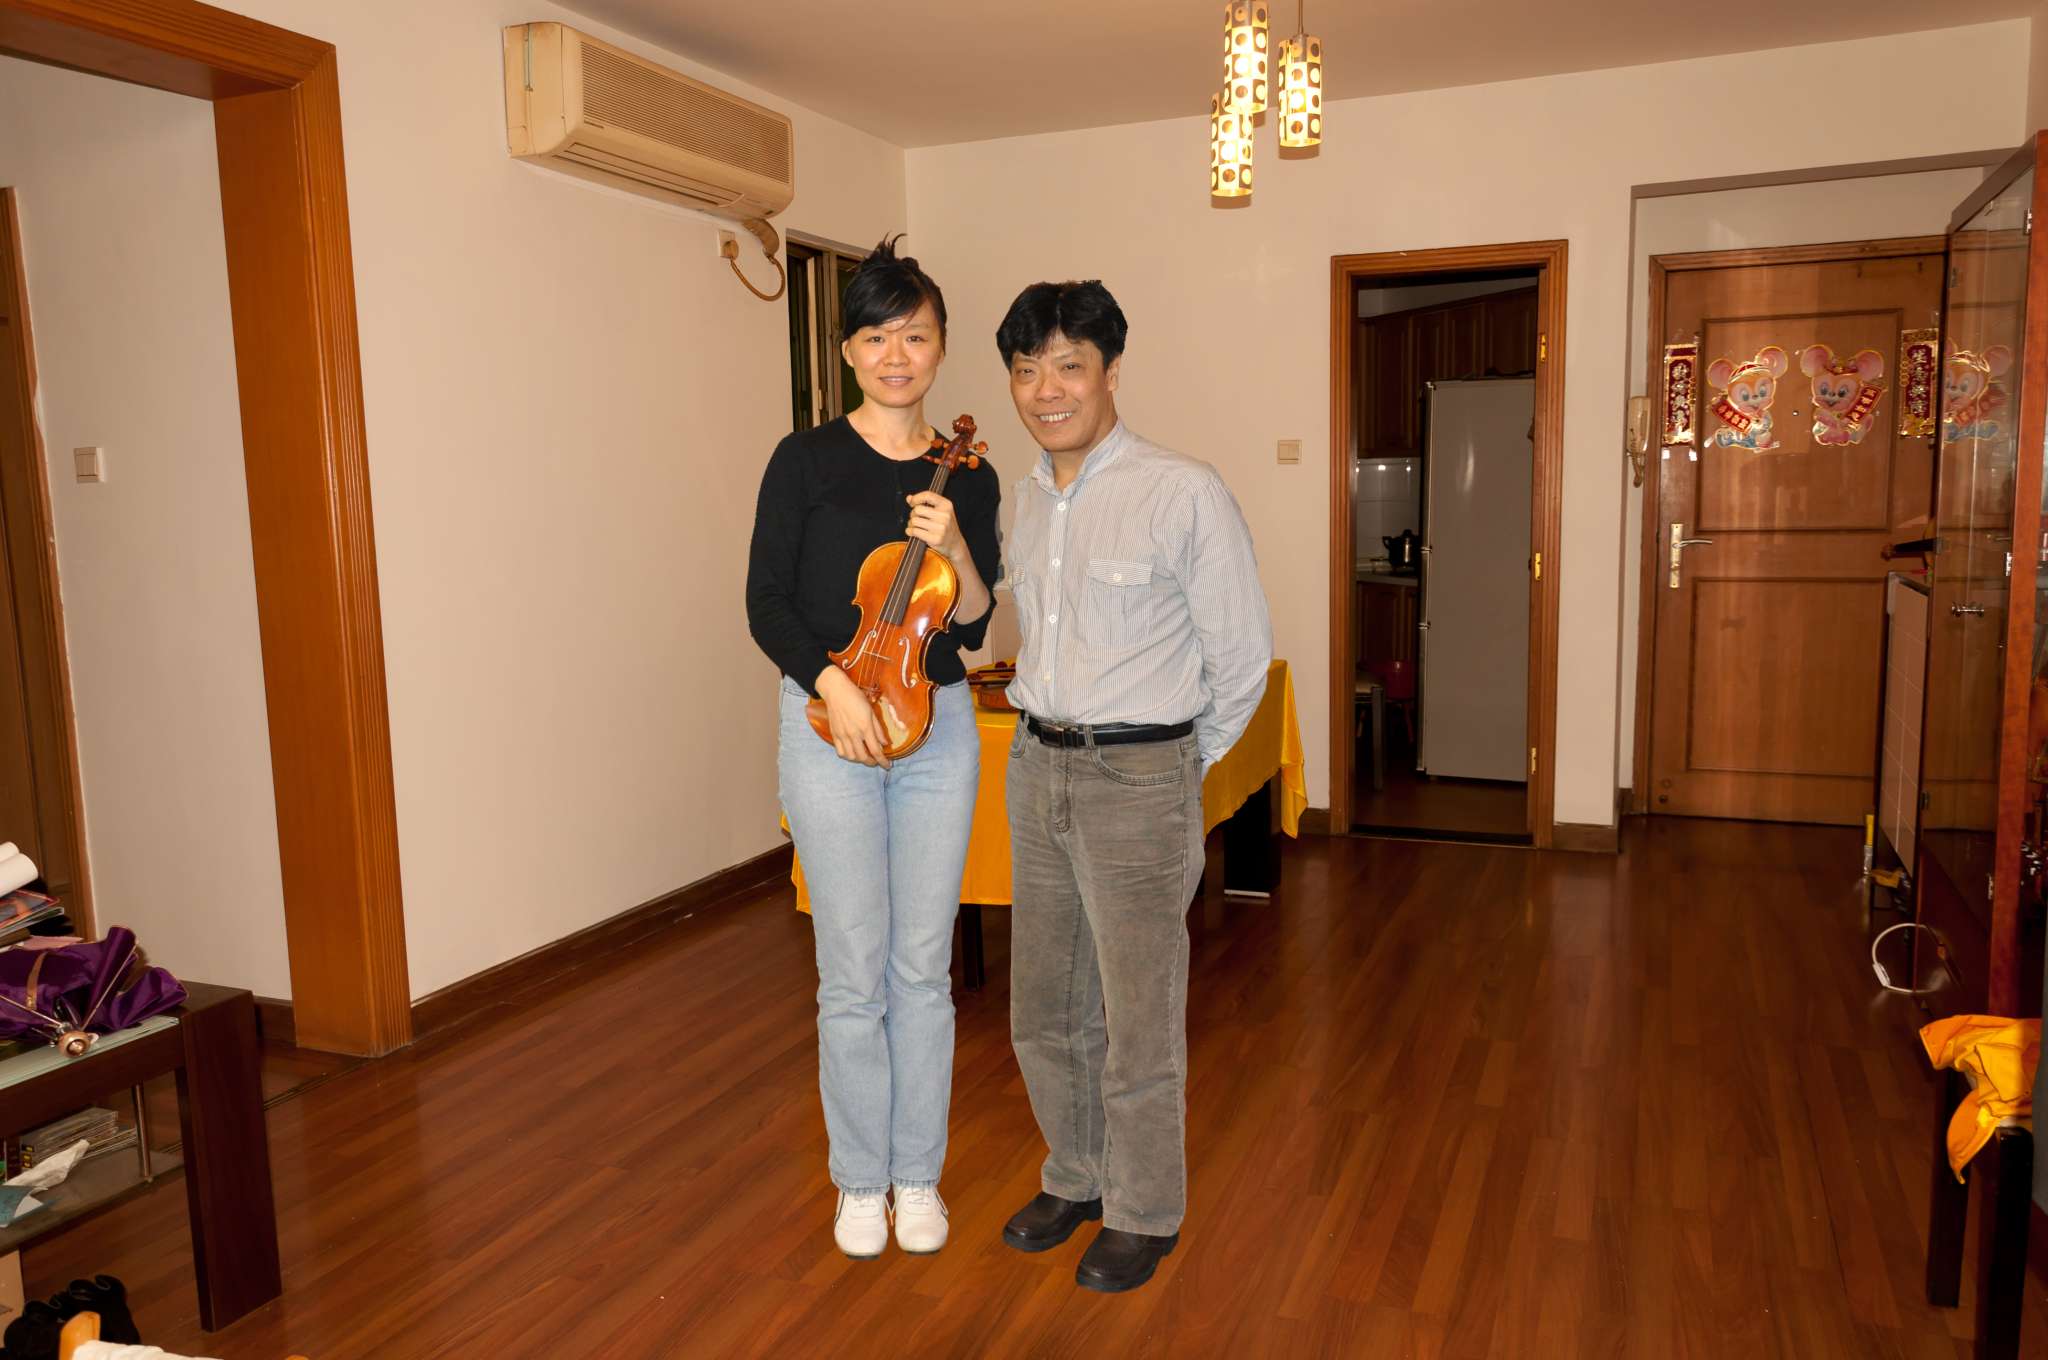 小提琴家黄滨的丈夫图片